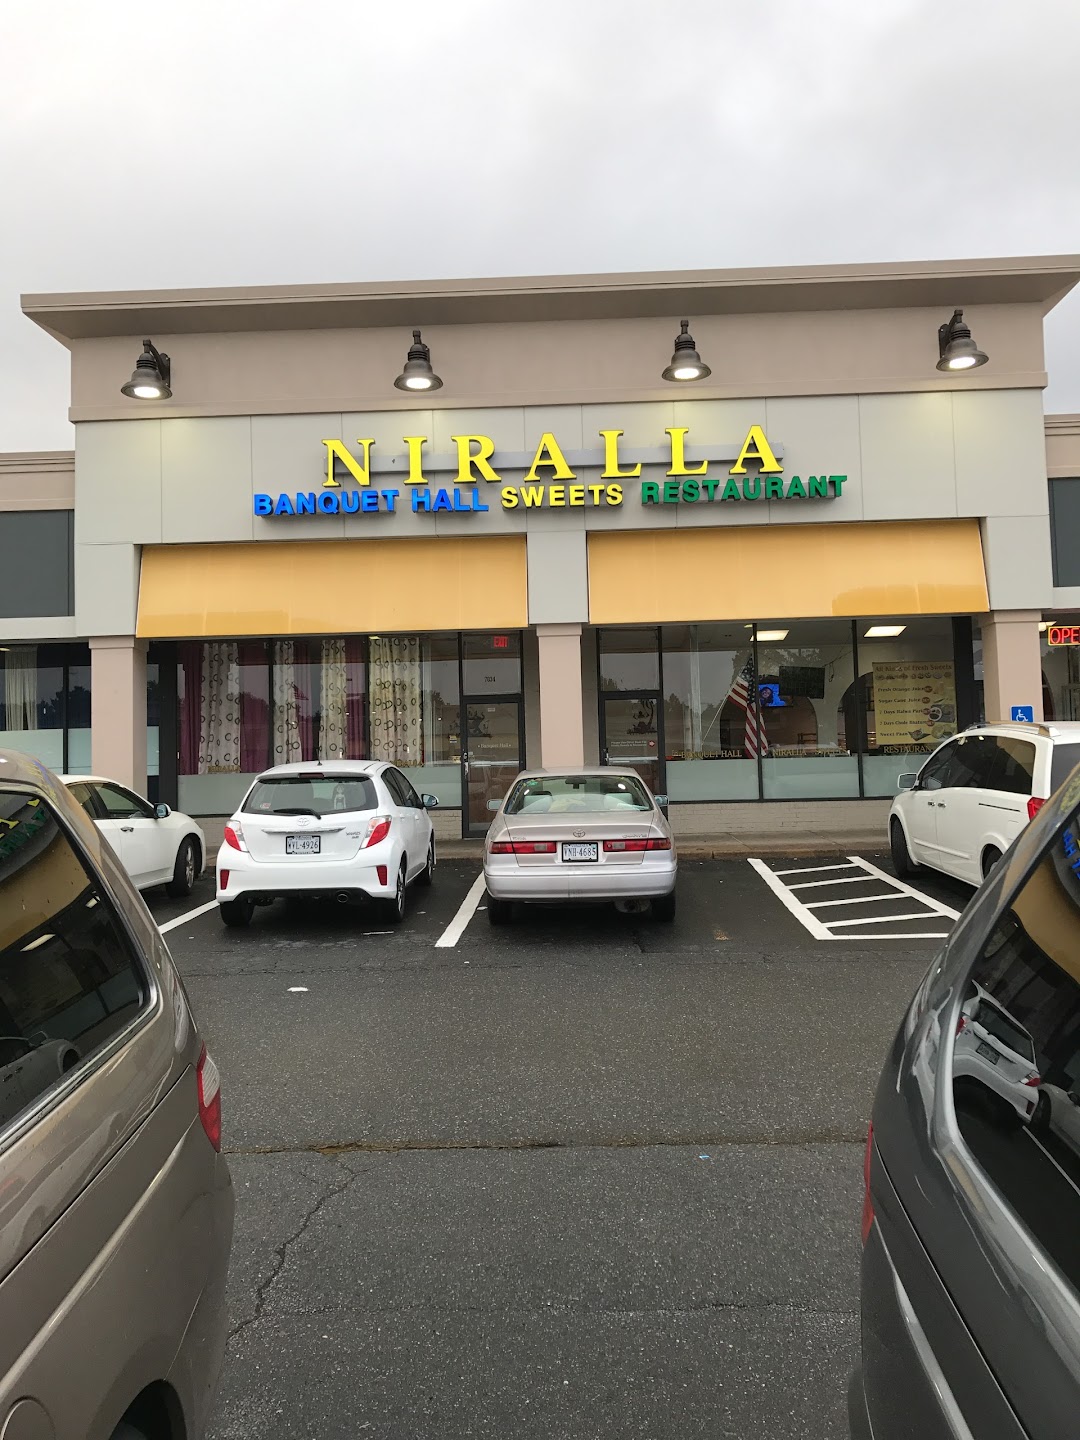 Niralla Restaurant